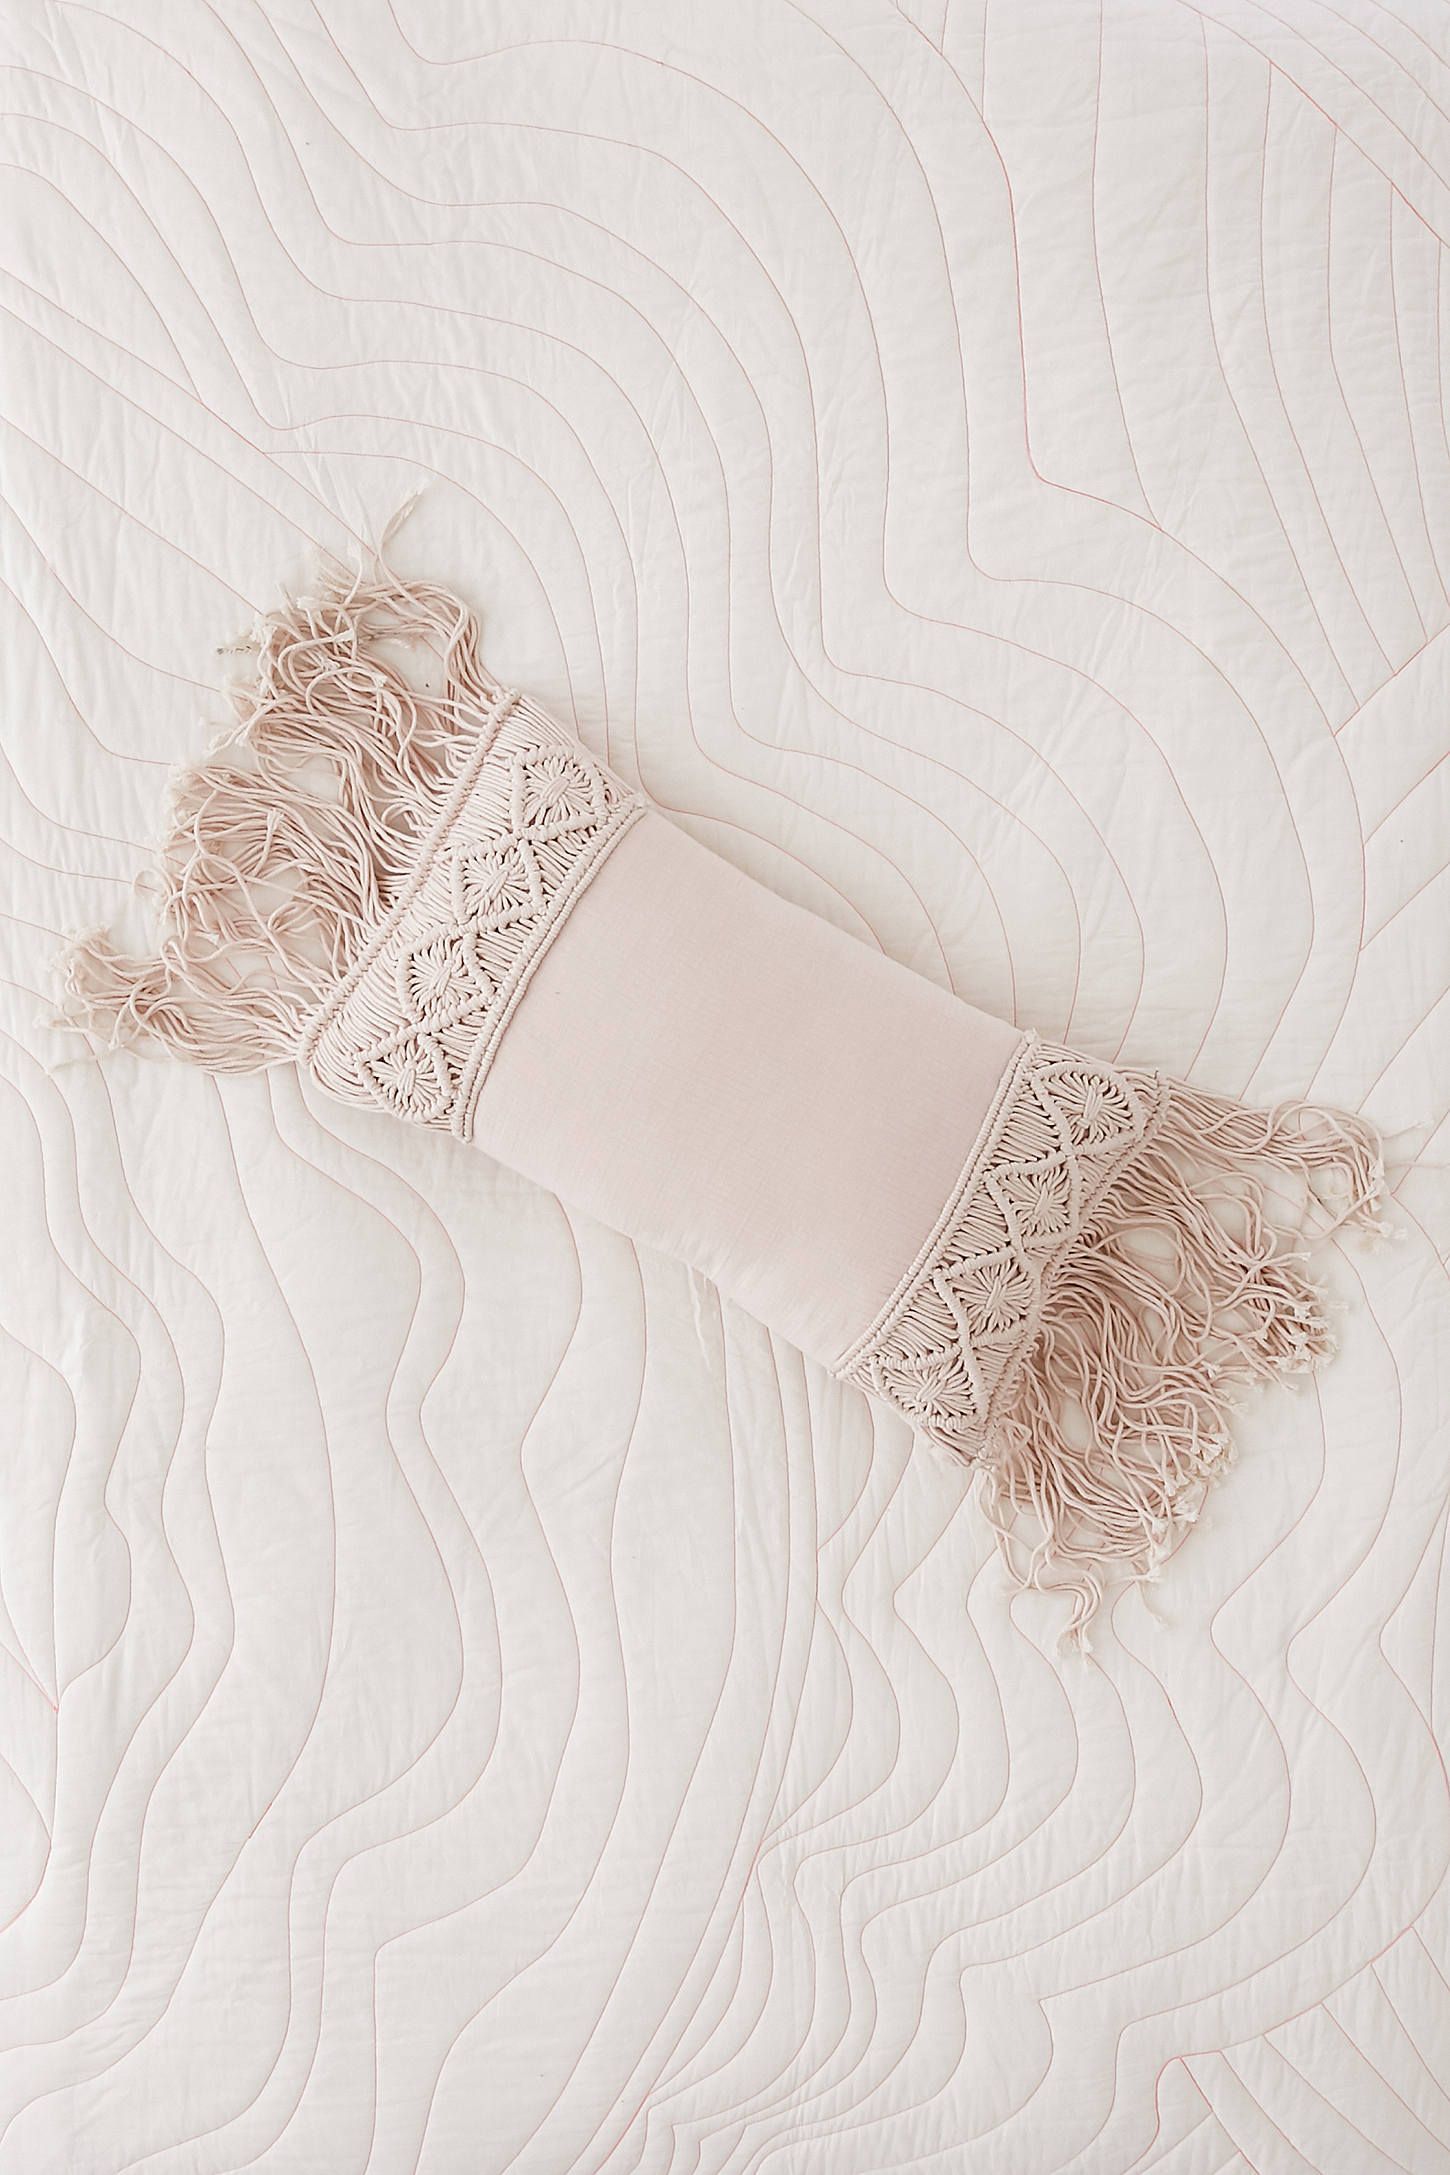 Aiko Crochet Fringe Bolster Pillow -   22 decor pillows with trim
 ideas